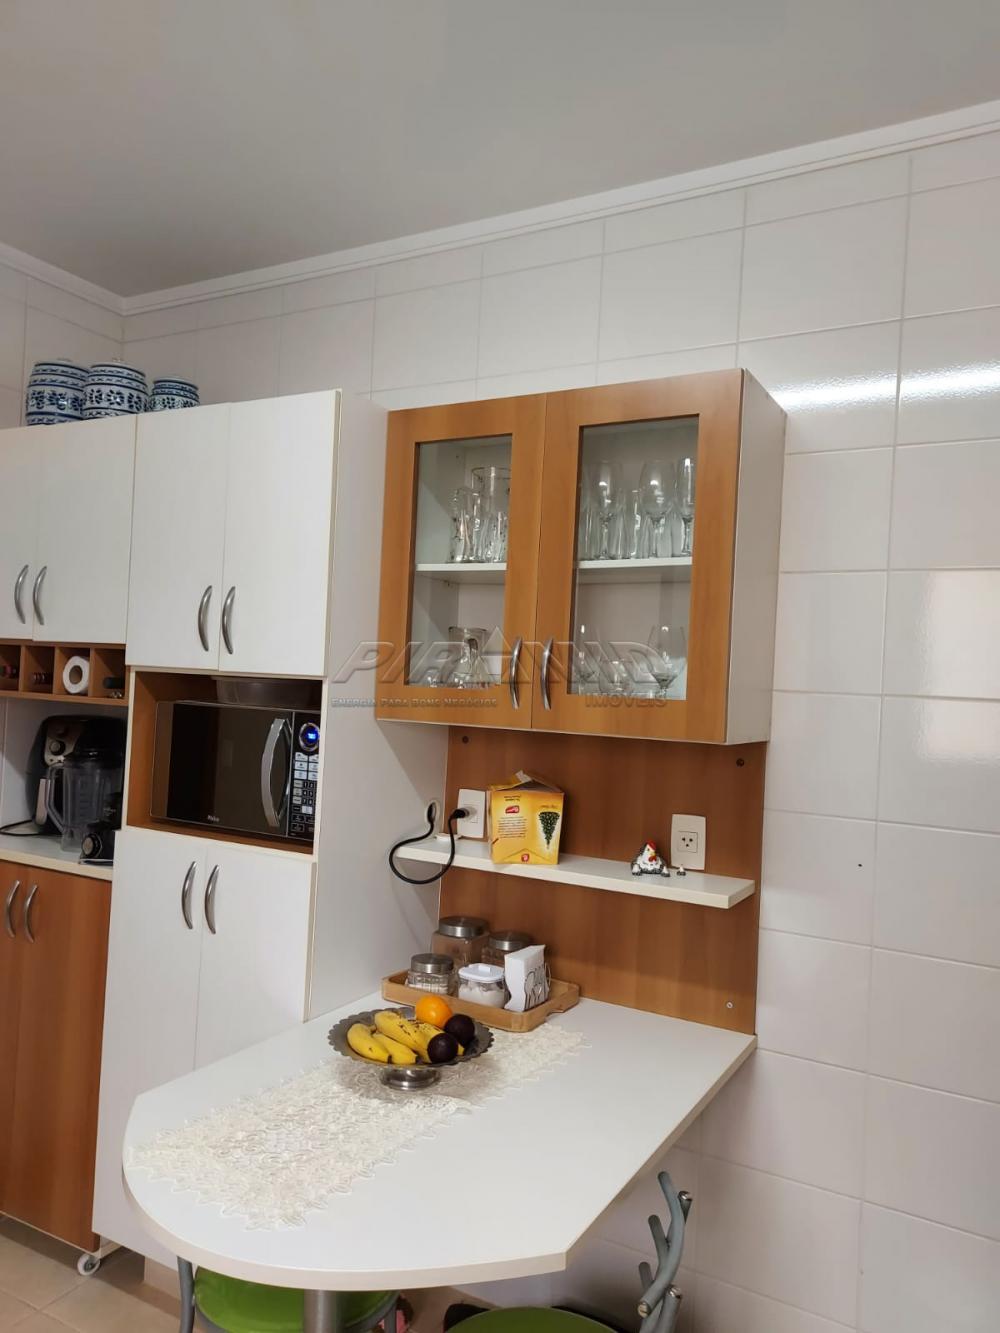 Comprar Apartamento / Padrão em Ribeirão Preto R$ 680.000,00 - Foto 14